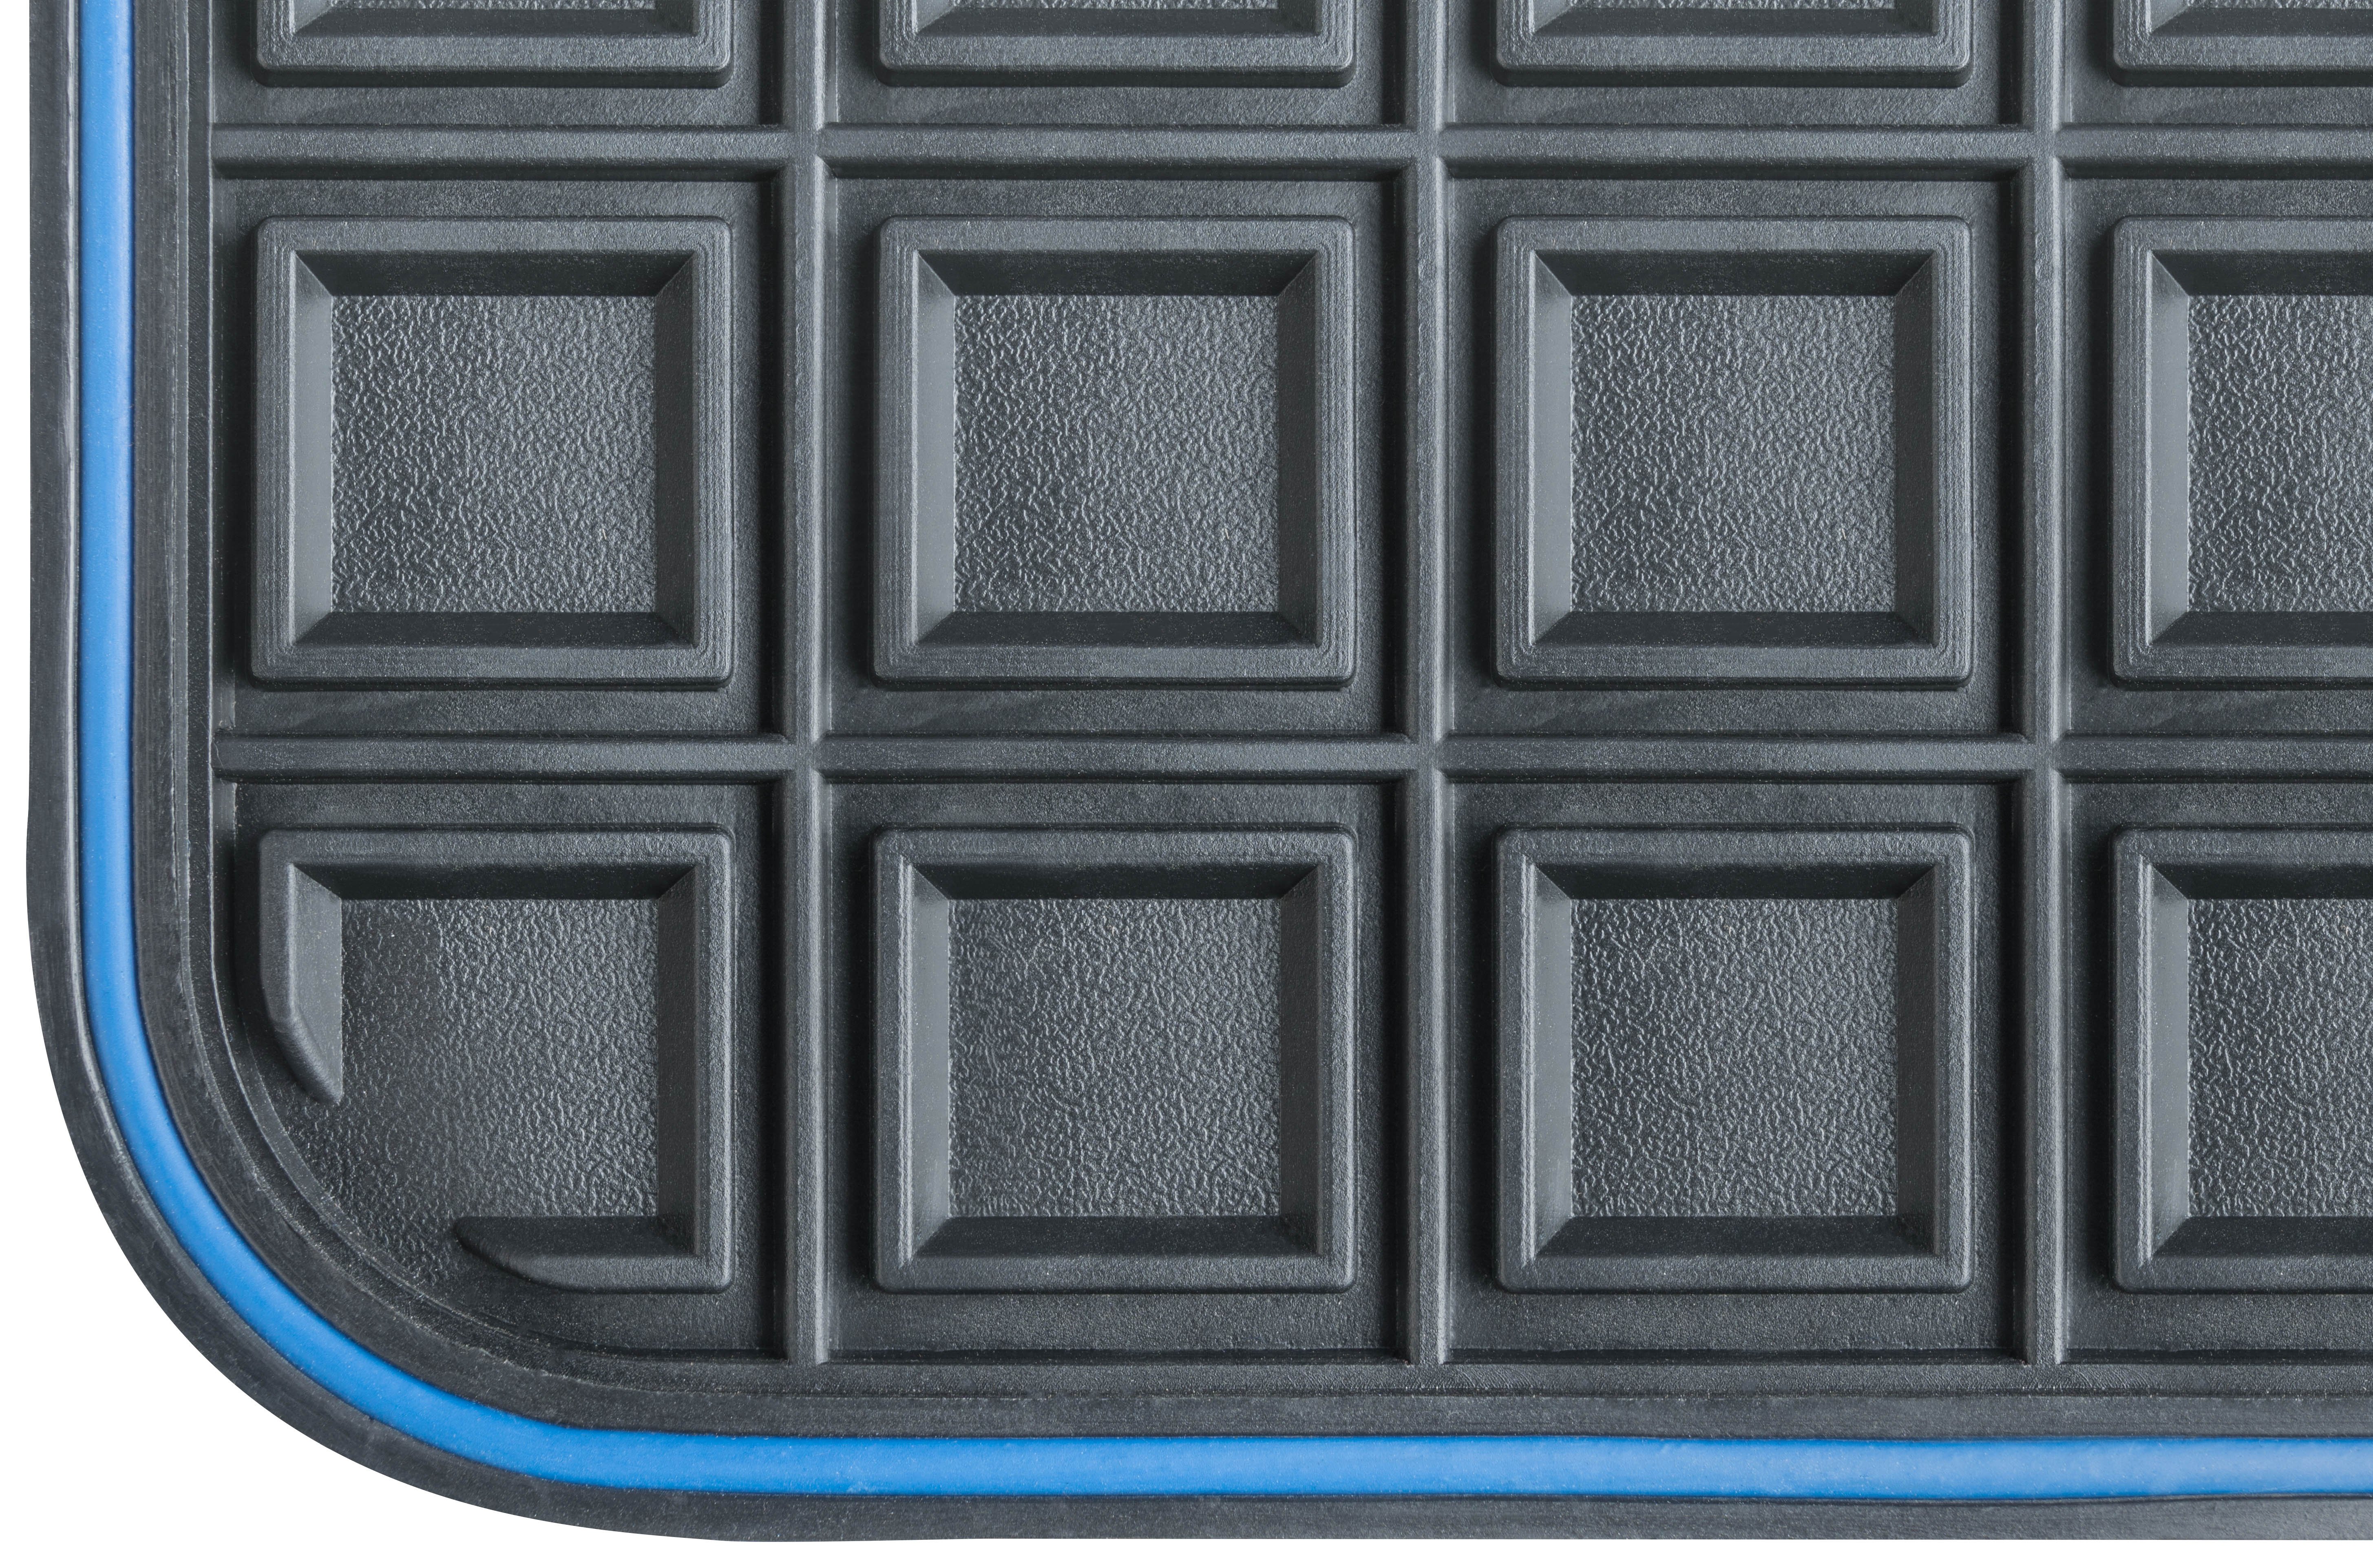 Rubber mats for Blueline Premium size R (back mat)